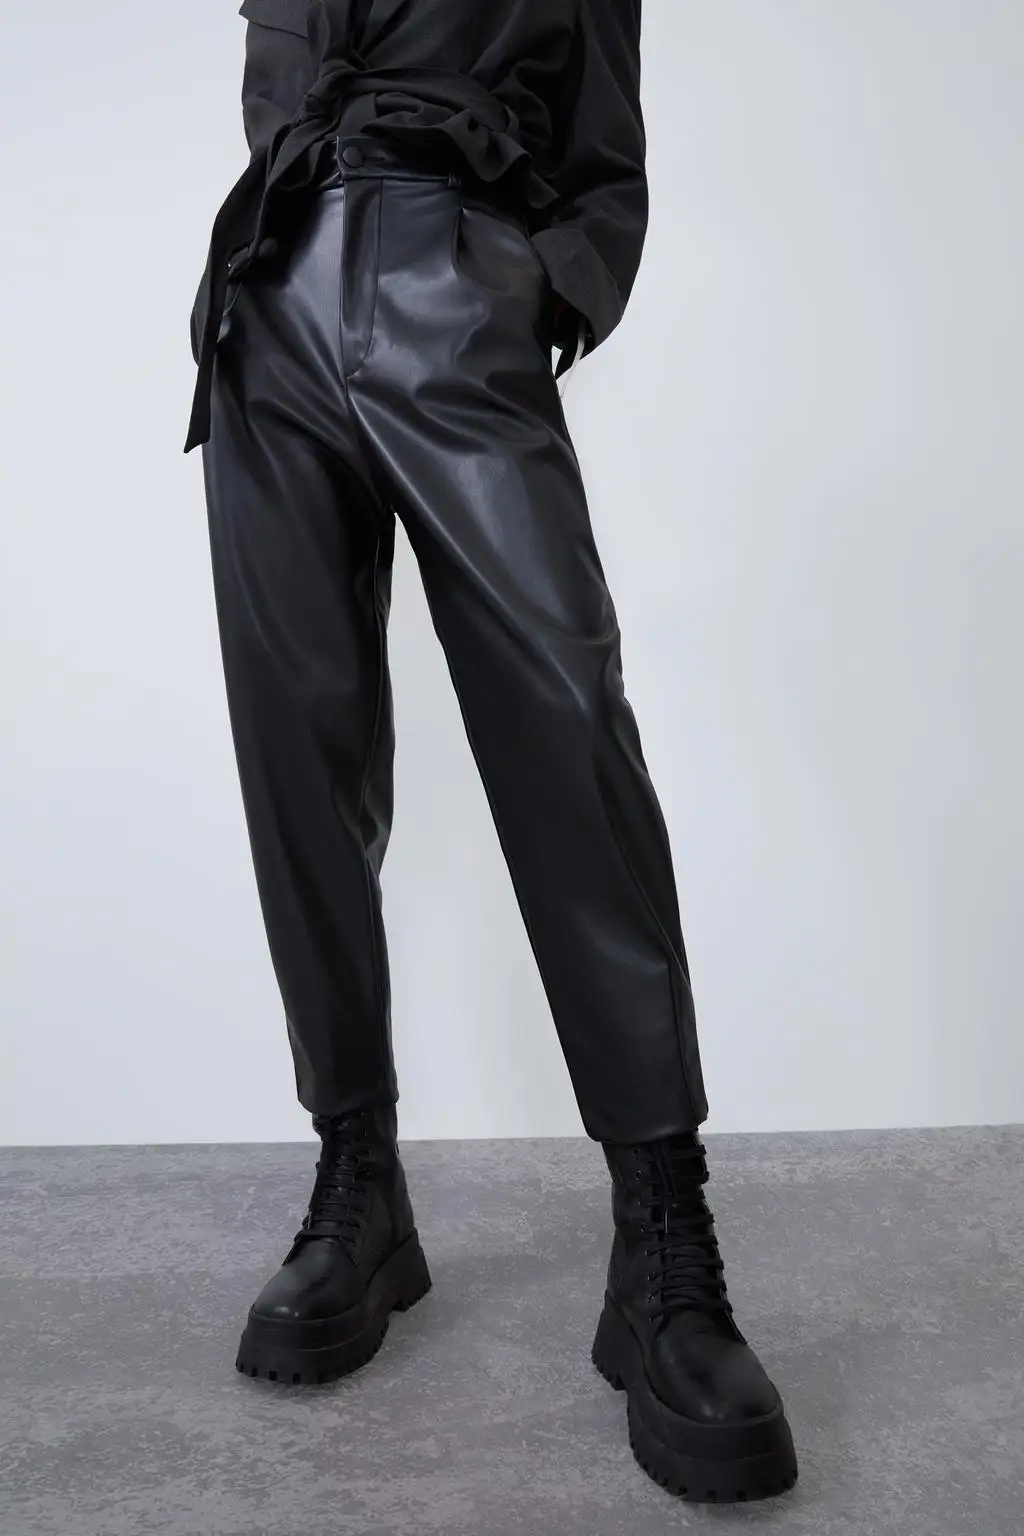 ZA Женская рубашка из искусственной кожи Модная новая куртка пальто с рукавами-пузырьками широкие брюки с высокой талией Свободная зимняя крутая уличная одежда